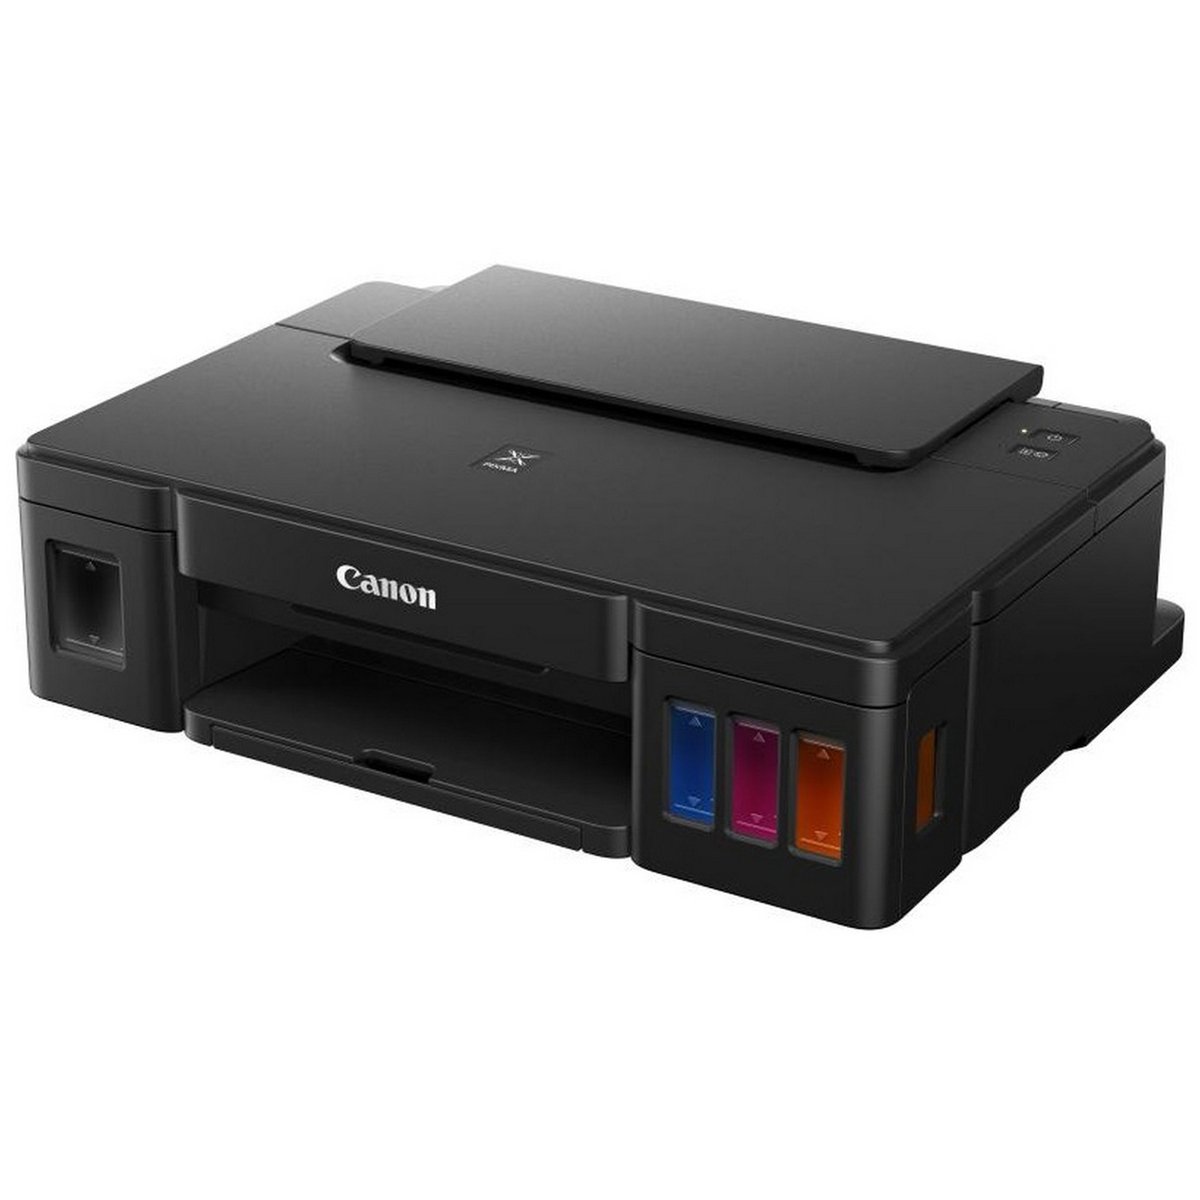 Canon PIXMA G3400 Wireless Printer